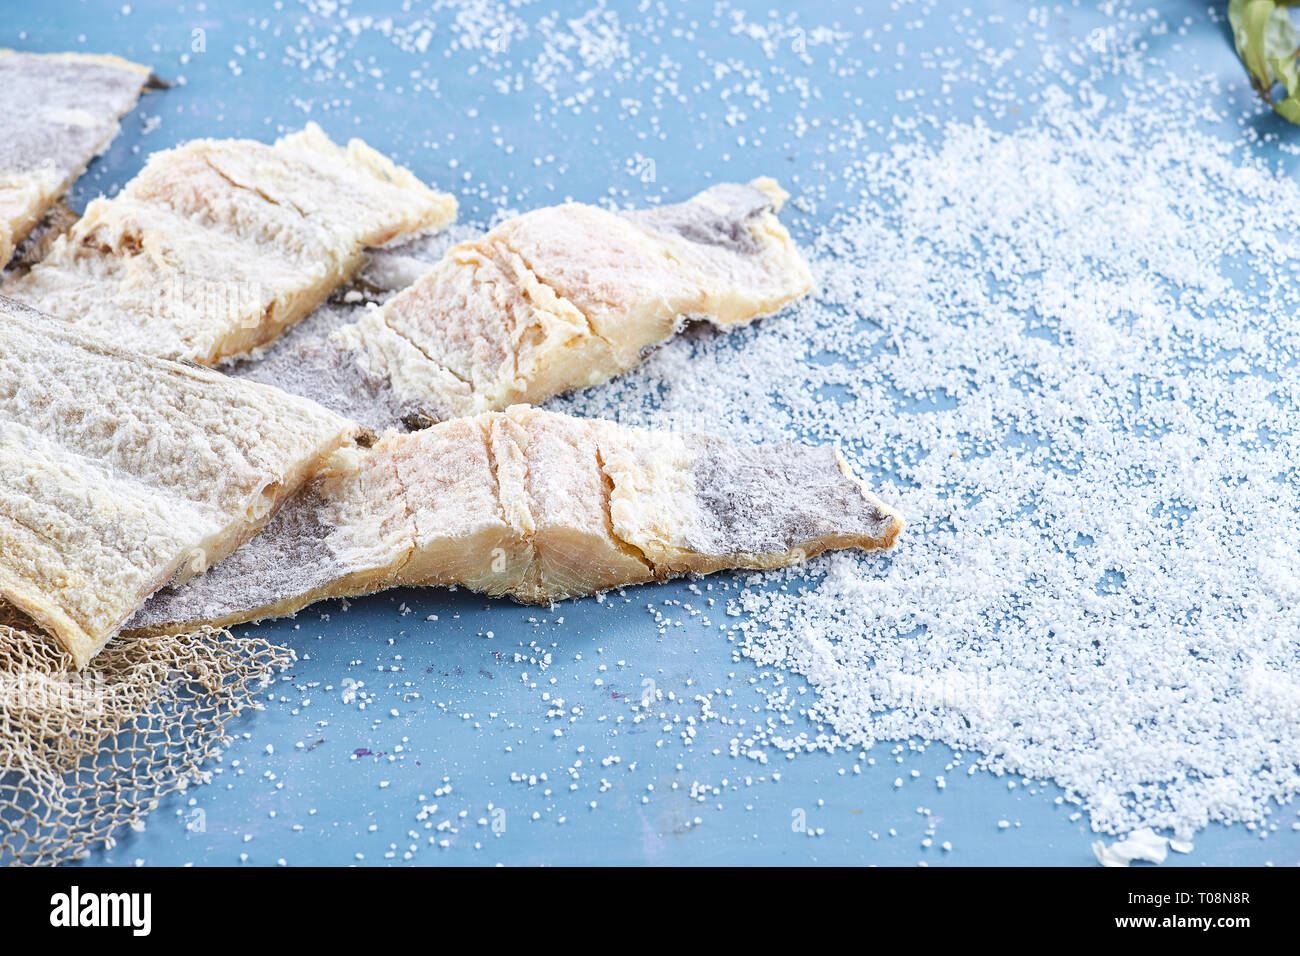 La morue La morue salée - recettes de poisson - Portugais Banque D'Images